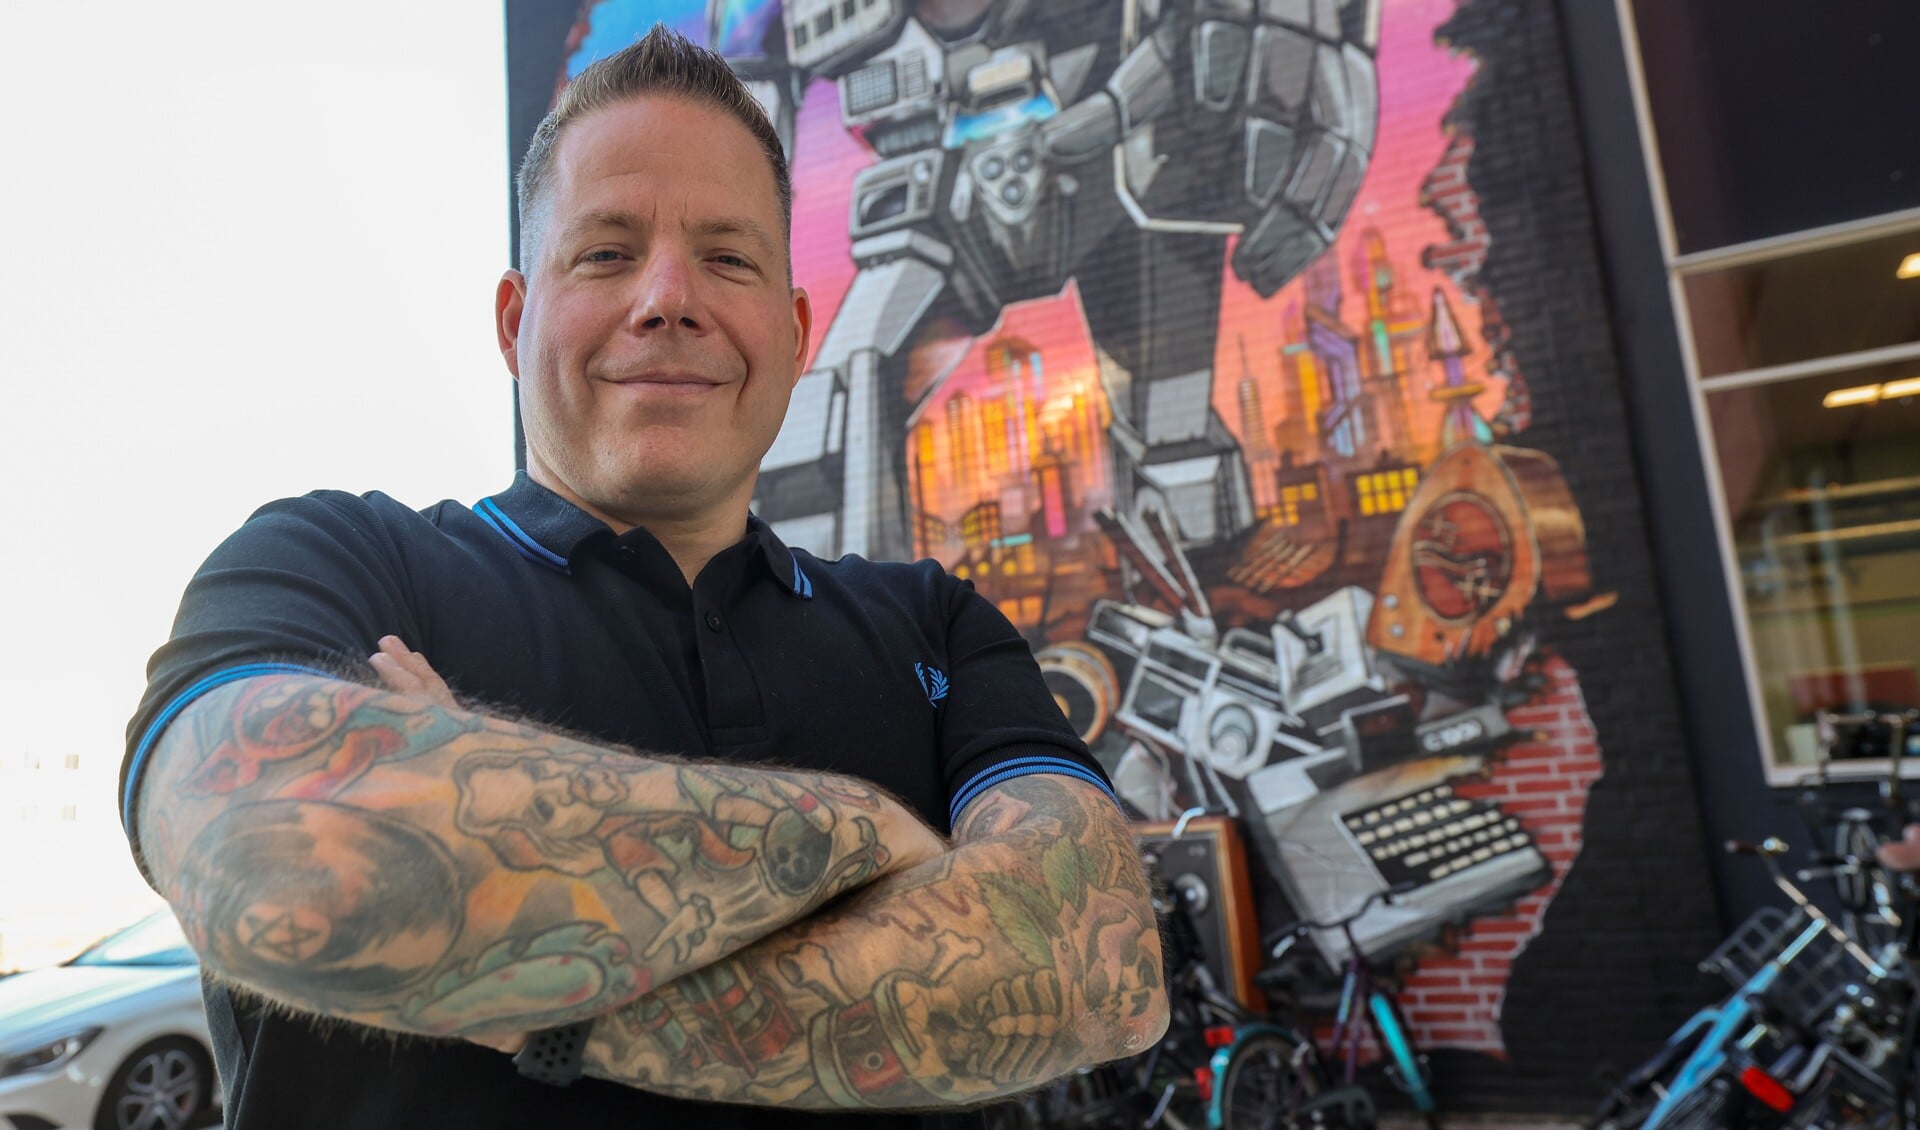 Tom Schilders is een groot liefhebber van tatoeages. Zijn eerste zichtbare tattoo is van The Dude uit The Big Lebowski op zijn rechter onderarm. “Deze staat voor mij symbool voor vrijheid.” FOTO: Bert Jansen.